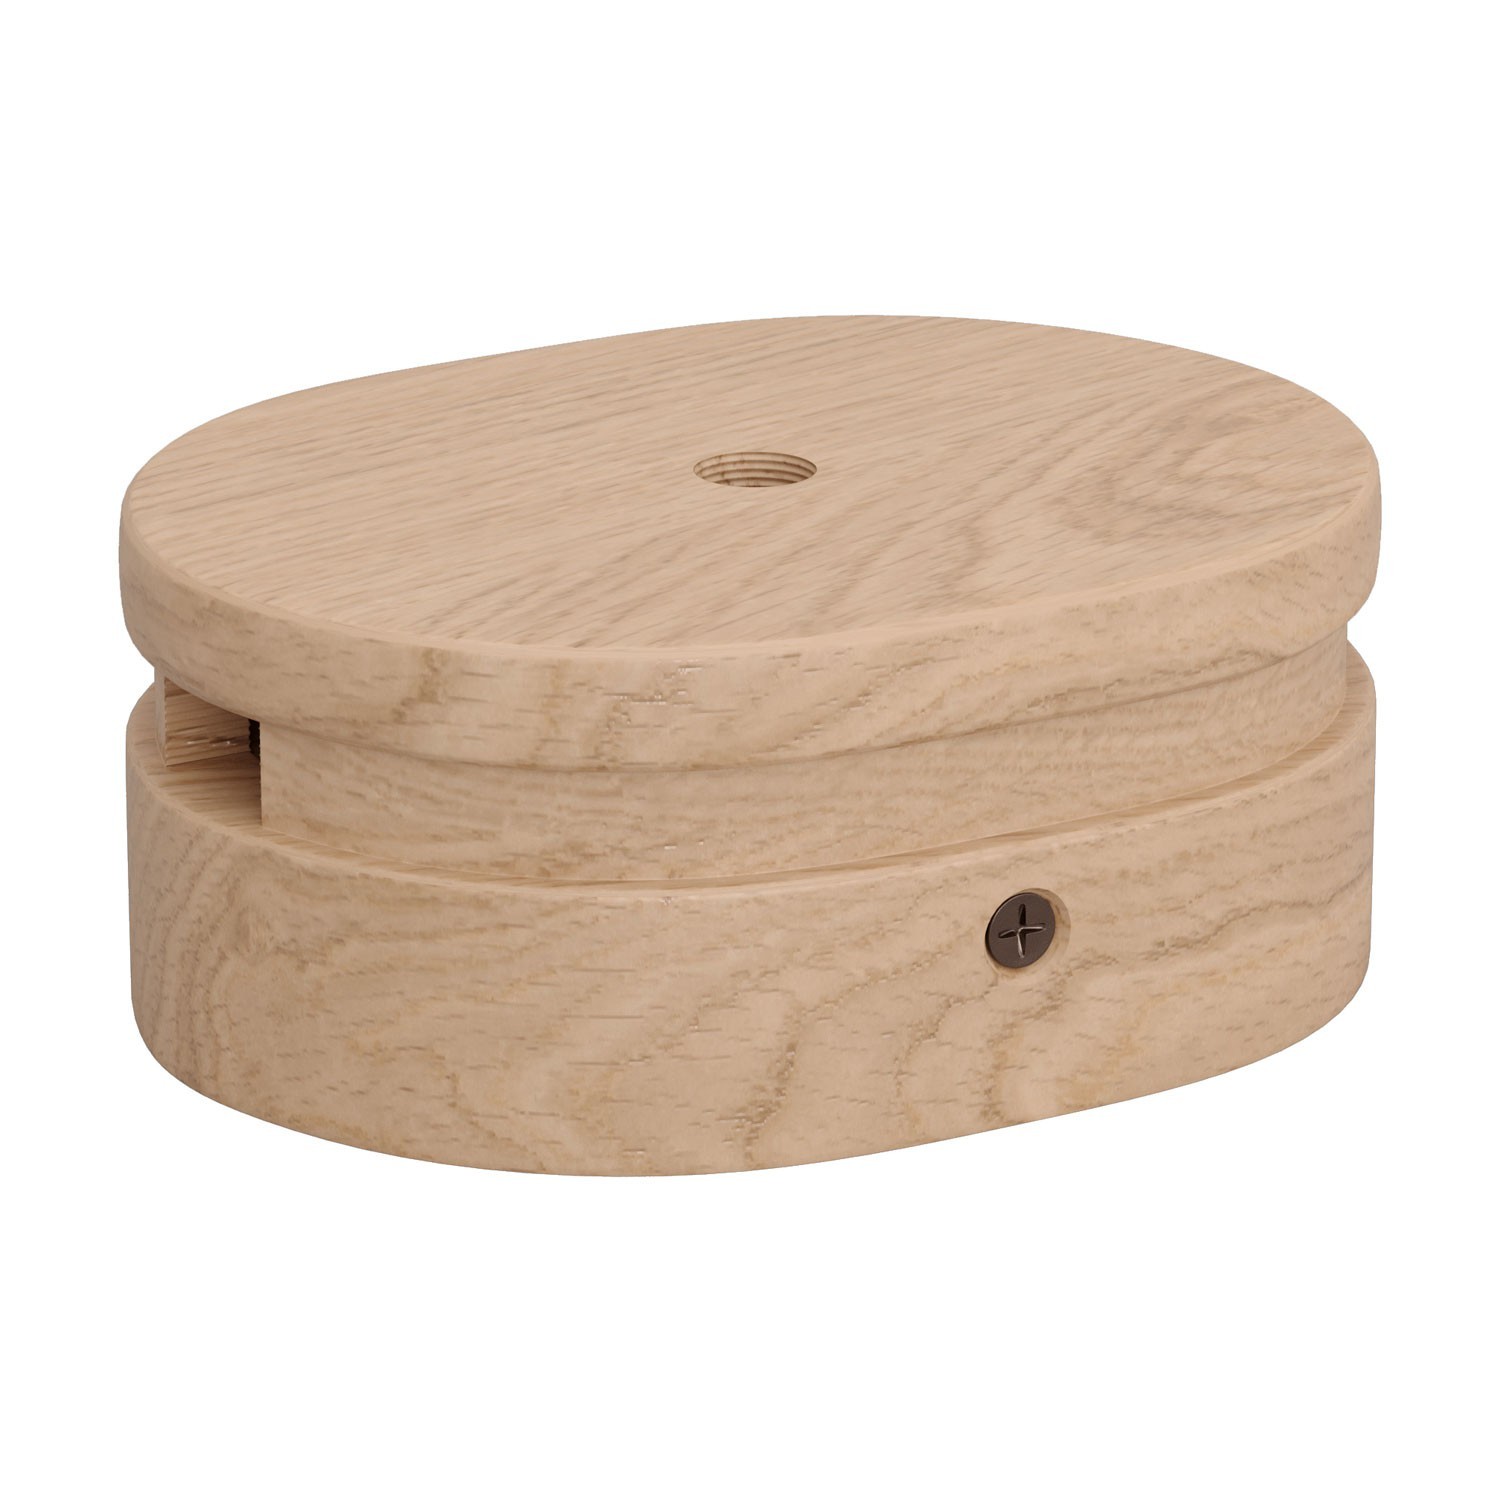 Rosone ovale in legno con un foro centrale e 2 fori laterali per cavo per catenaria e sistema Filé. Made in Italy